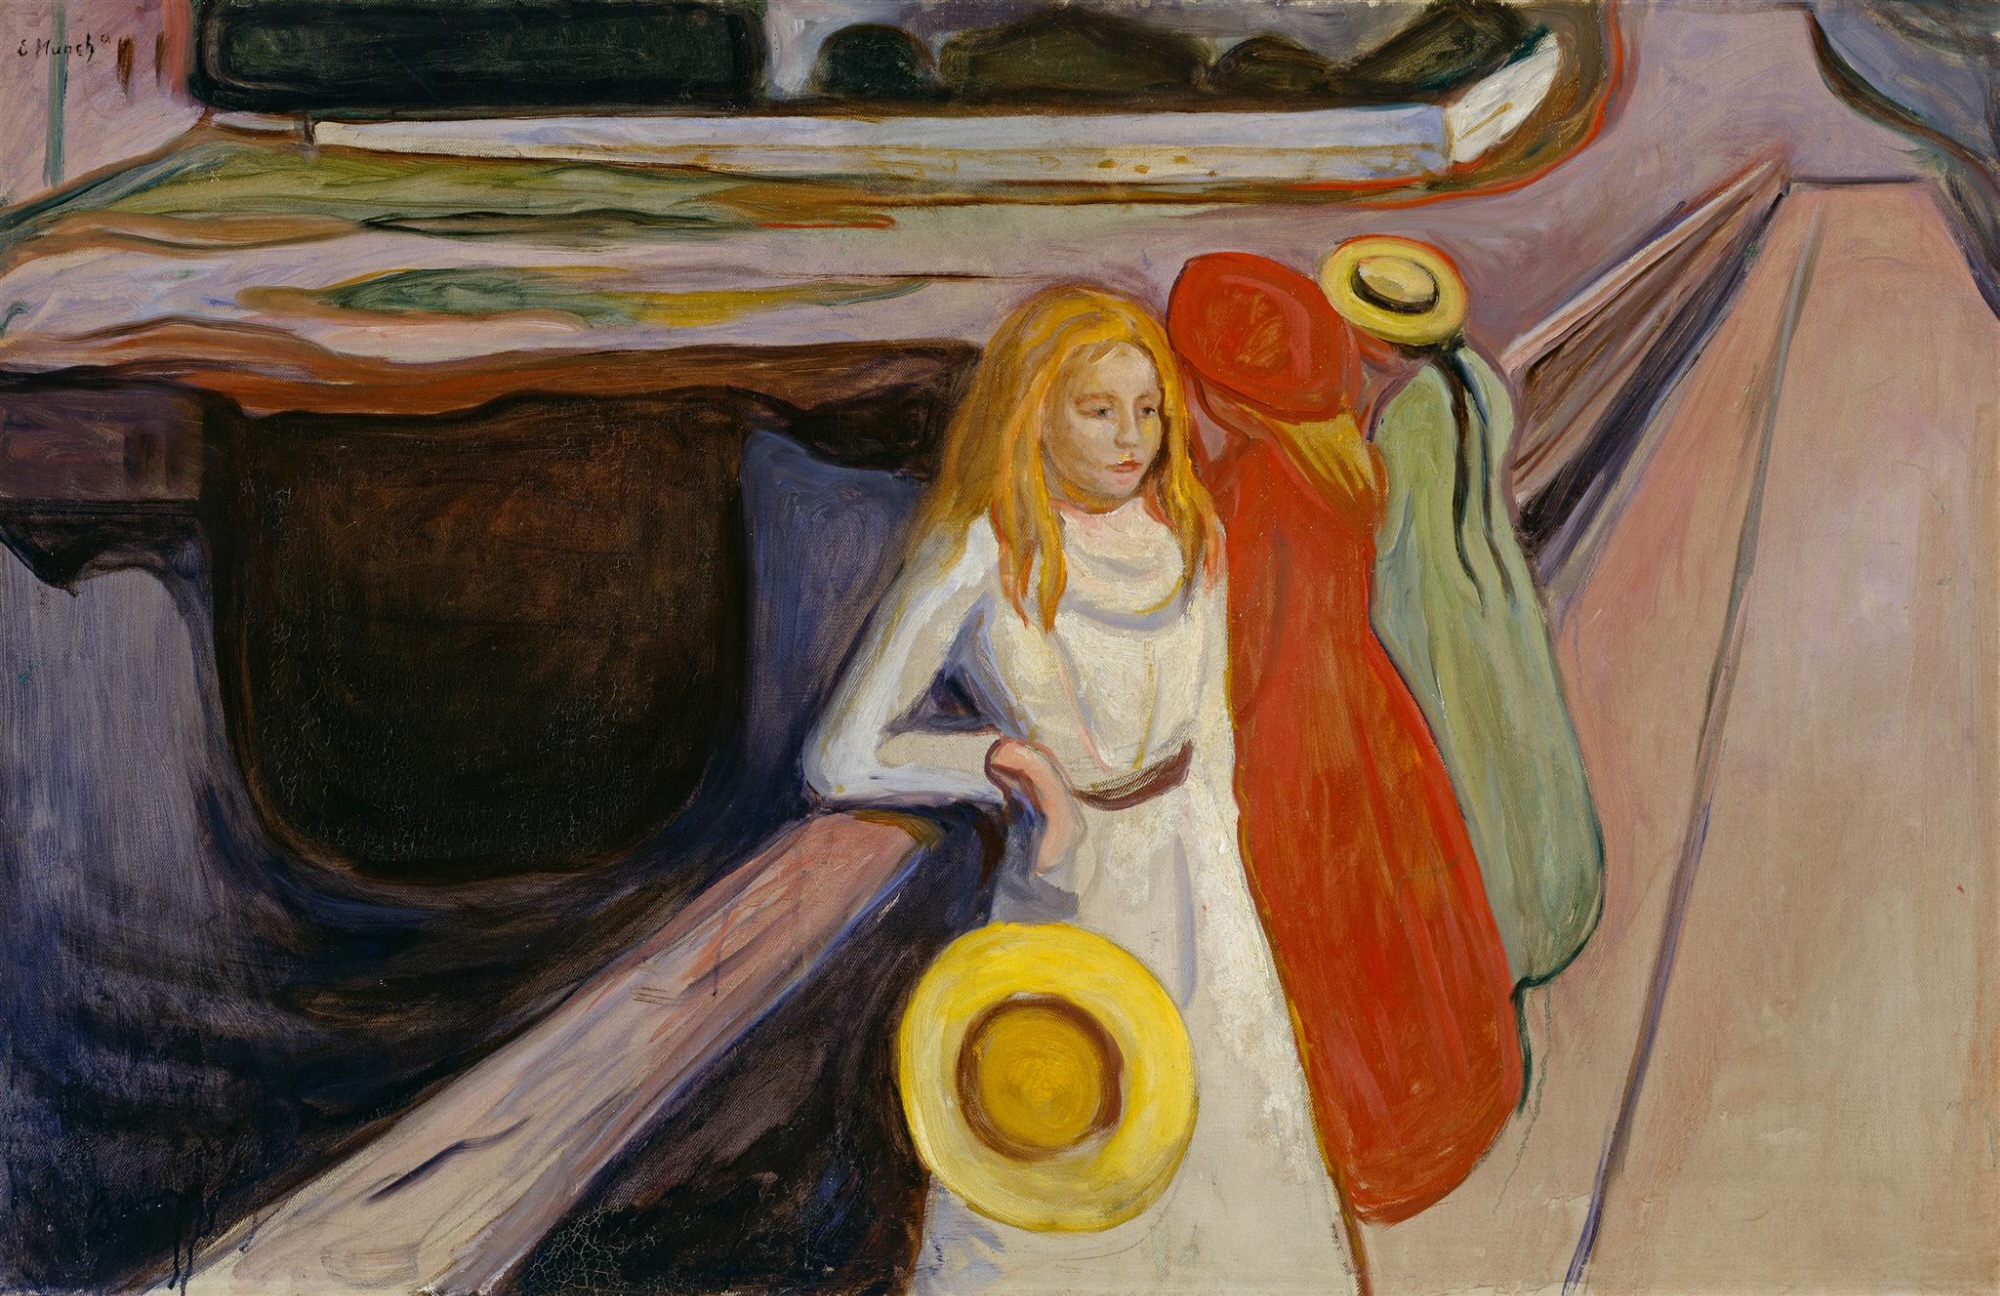 橋上的女孩 by Edvard Munch - 1901 年 - 83.8 x 129.6 釐米 